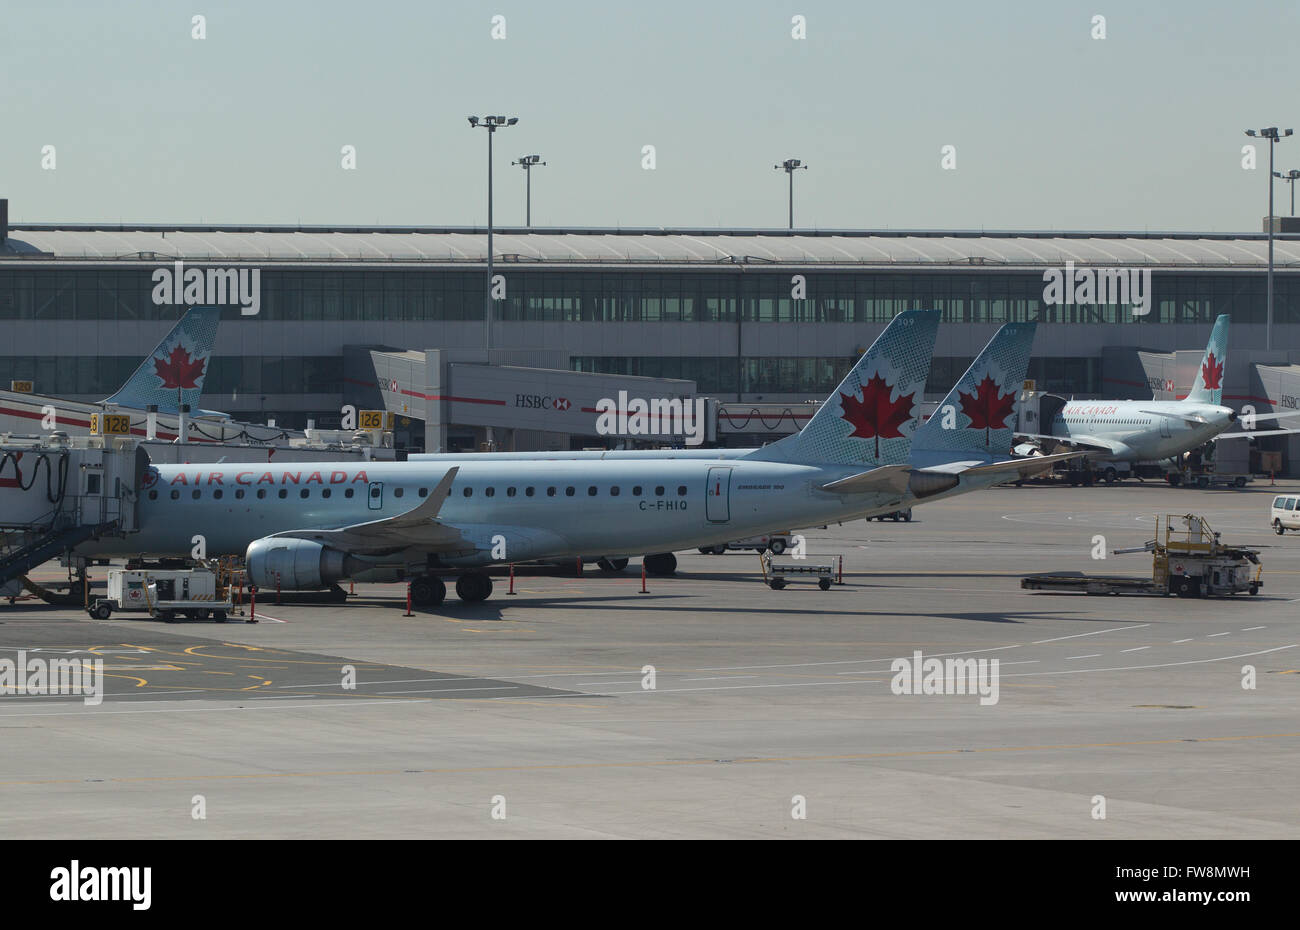 Air Canada Jet auf dem Asphalt sitzt, nach der Ankunft am Flughafen in Toronto, Ontario, Toronto Pearson am Donnerstag, 7. Mai 2015. Stockfoto